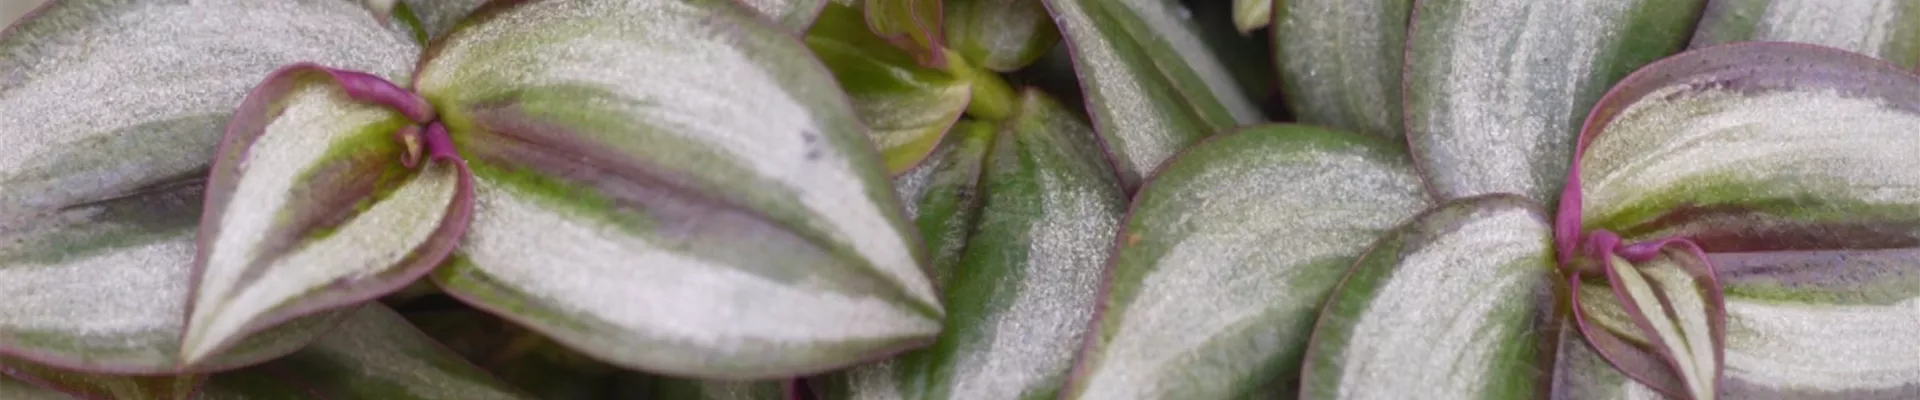 Silber-Dreimasterblume - Einpflanzen in ein Gefäß (Thumbnail).jpg